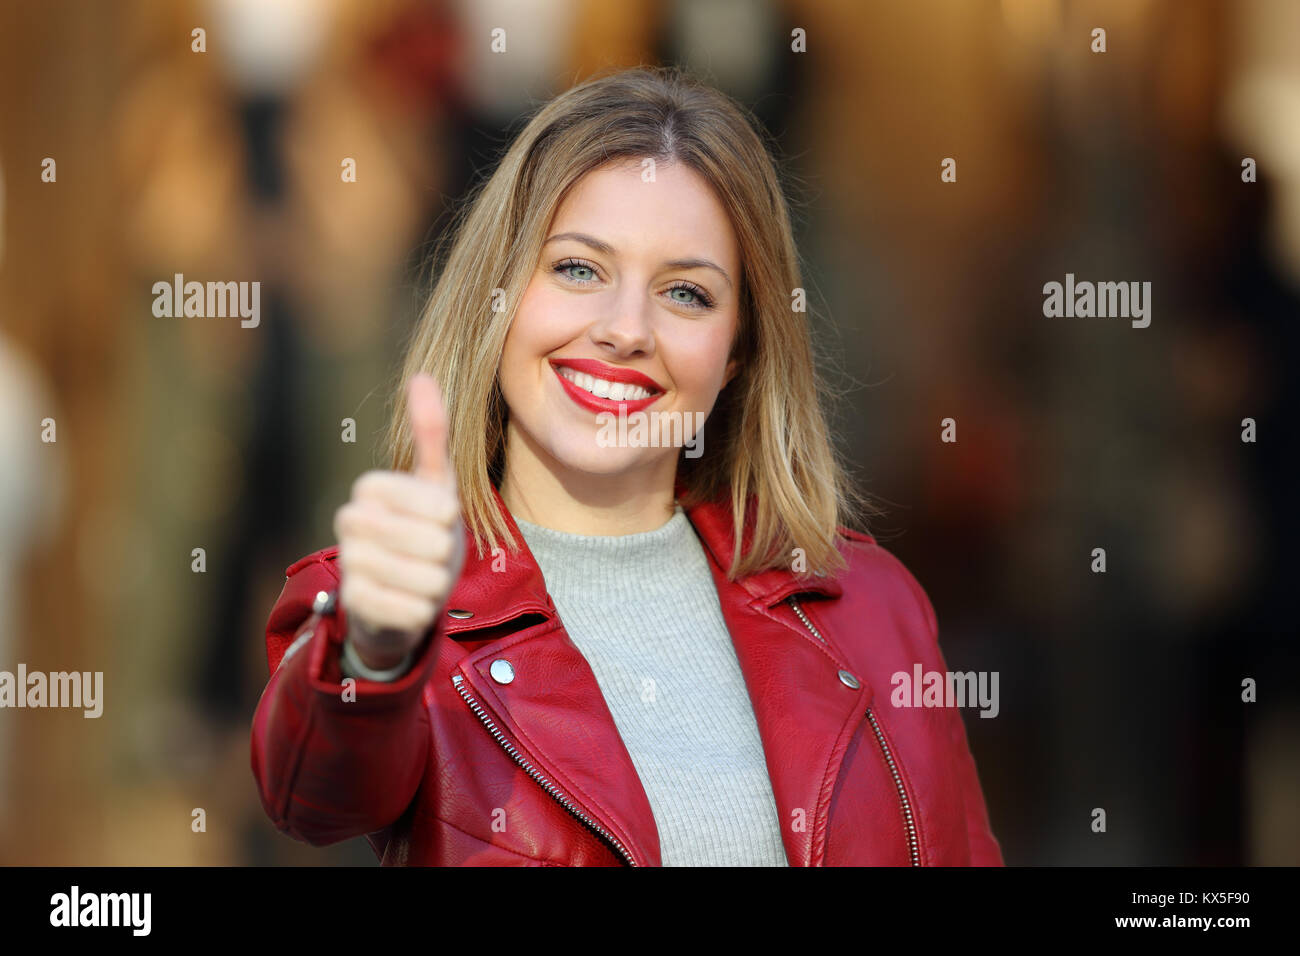 Vue avant portrait of a fashion girl with thumb up portant une veste rouge vous regarde dans la rue avec une devanture en arrière-plan Banque D'Images